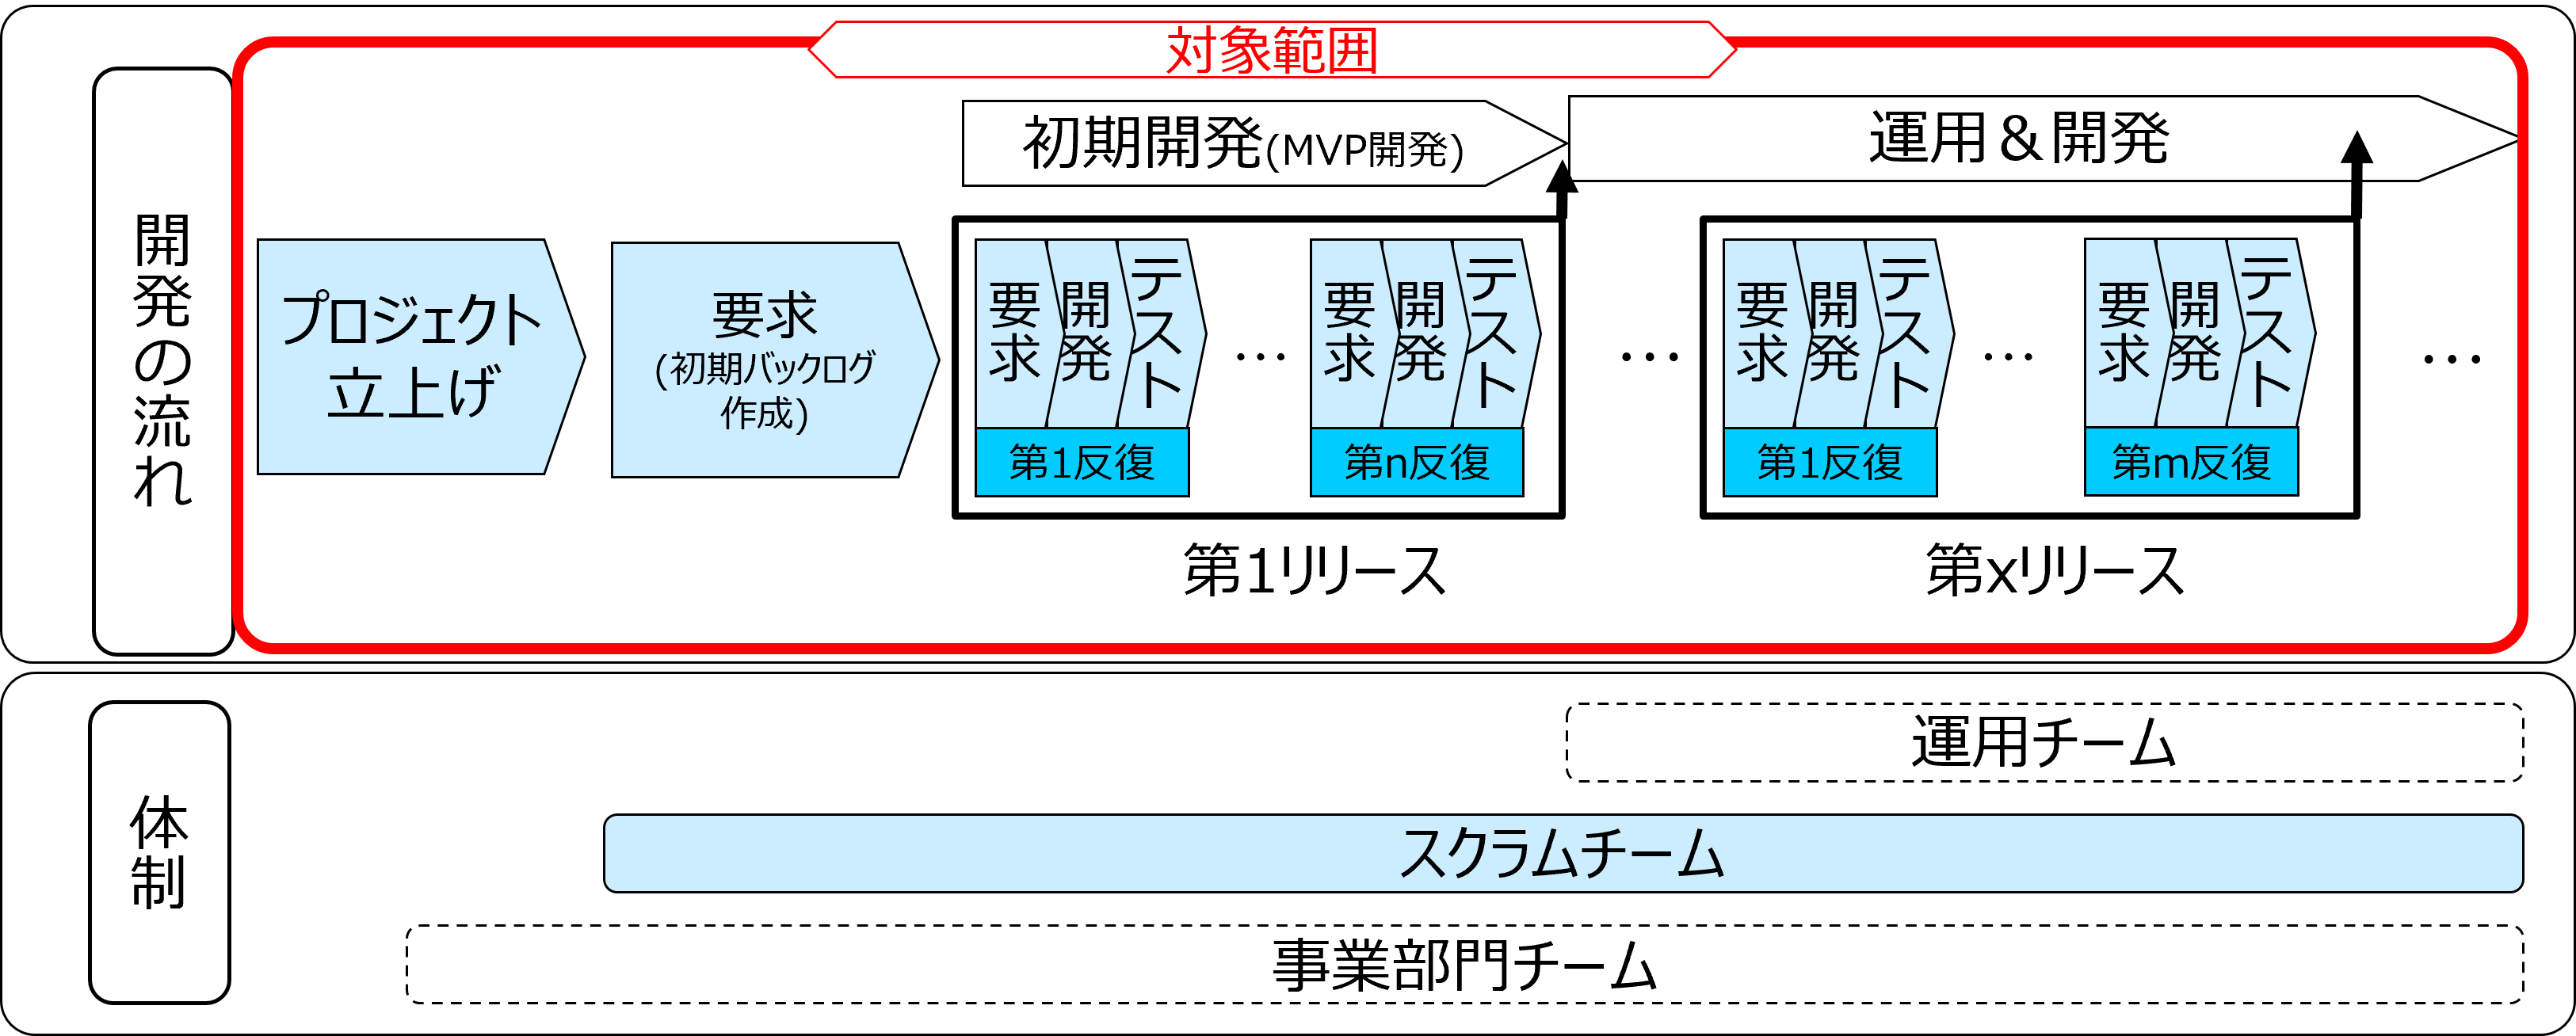 図1　アジャイル開発の流れ・体制と本版の対象範囲